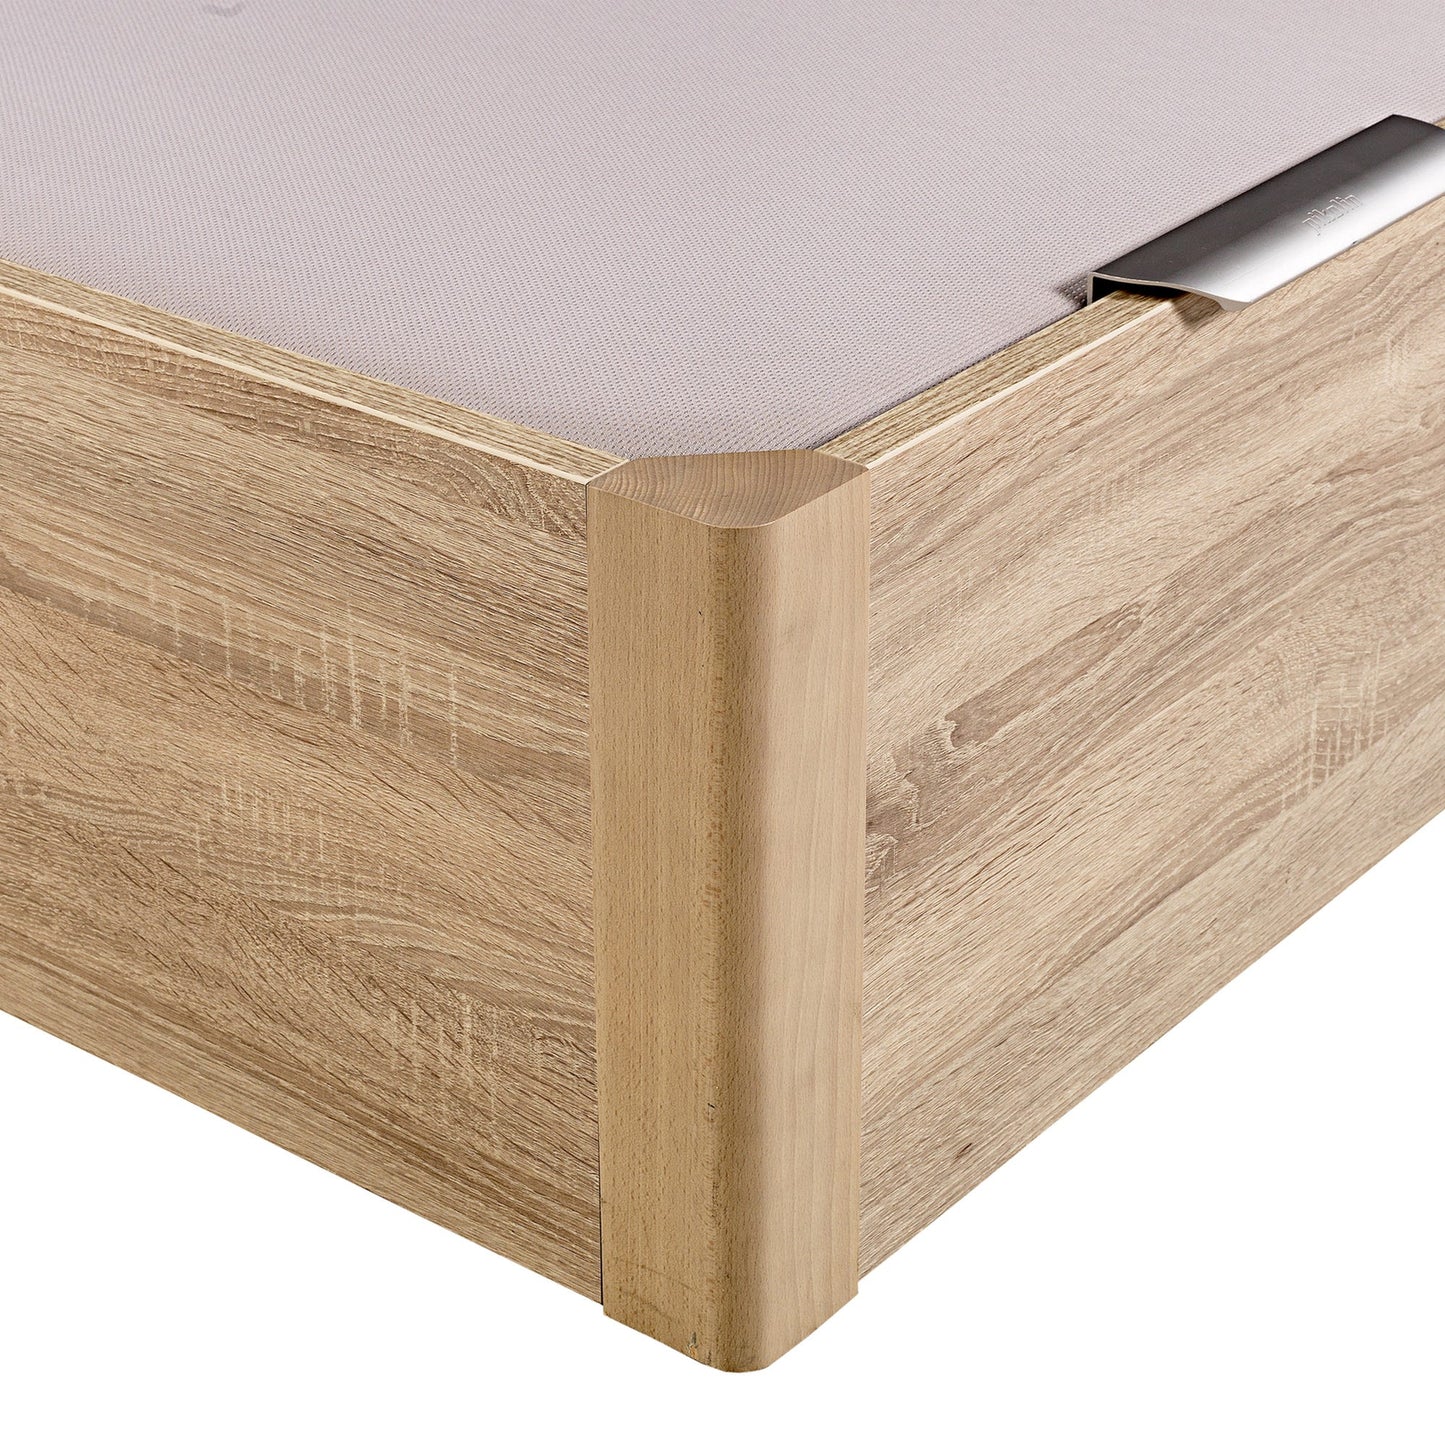 Canapé abatible de madera de alta capacidad tapa doble de color natural - DESIGN - 200x200